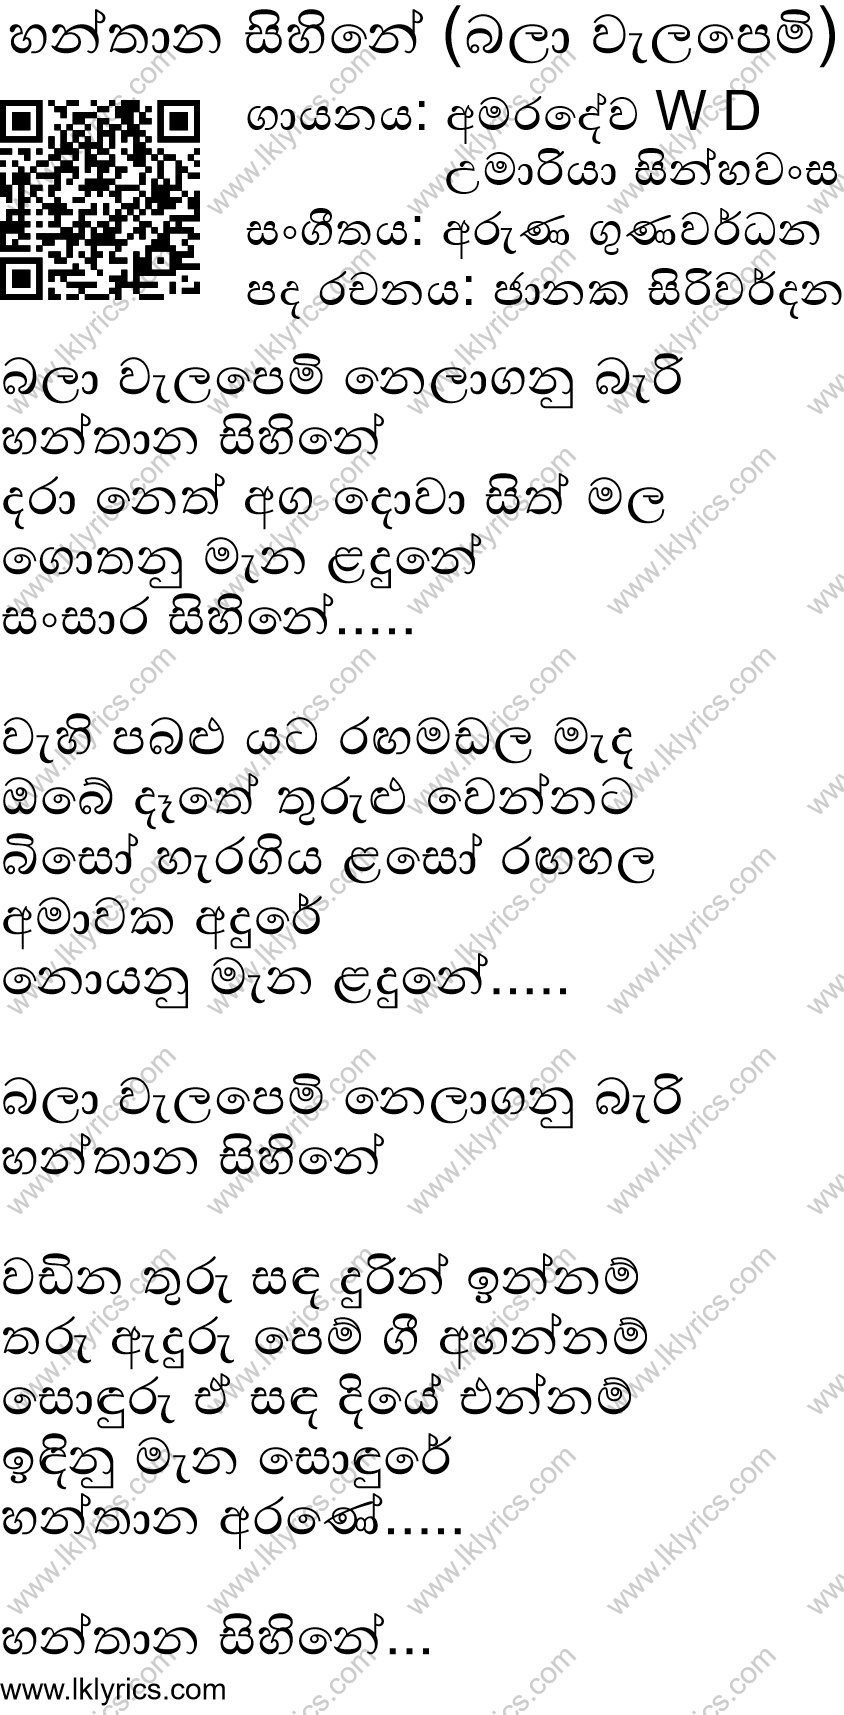 Hanthana Sihine Lyrics